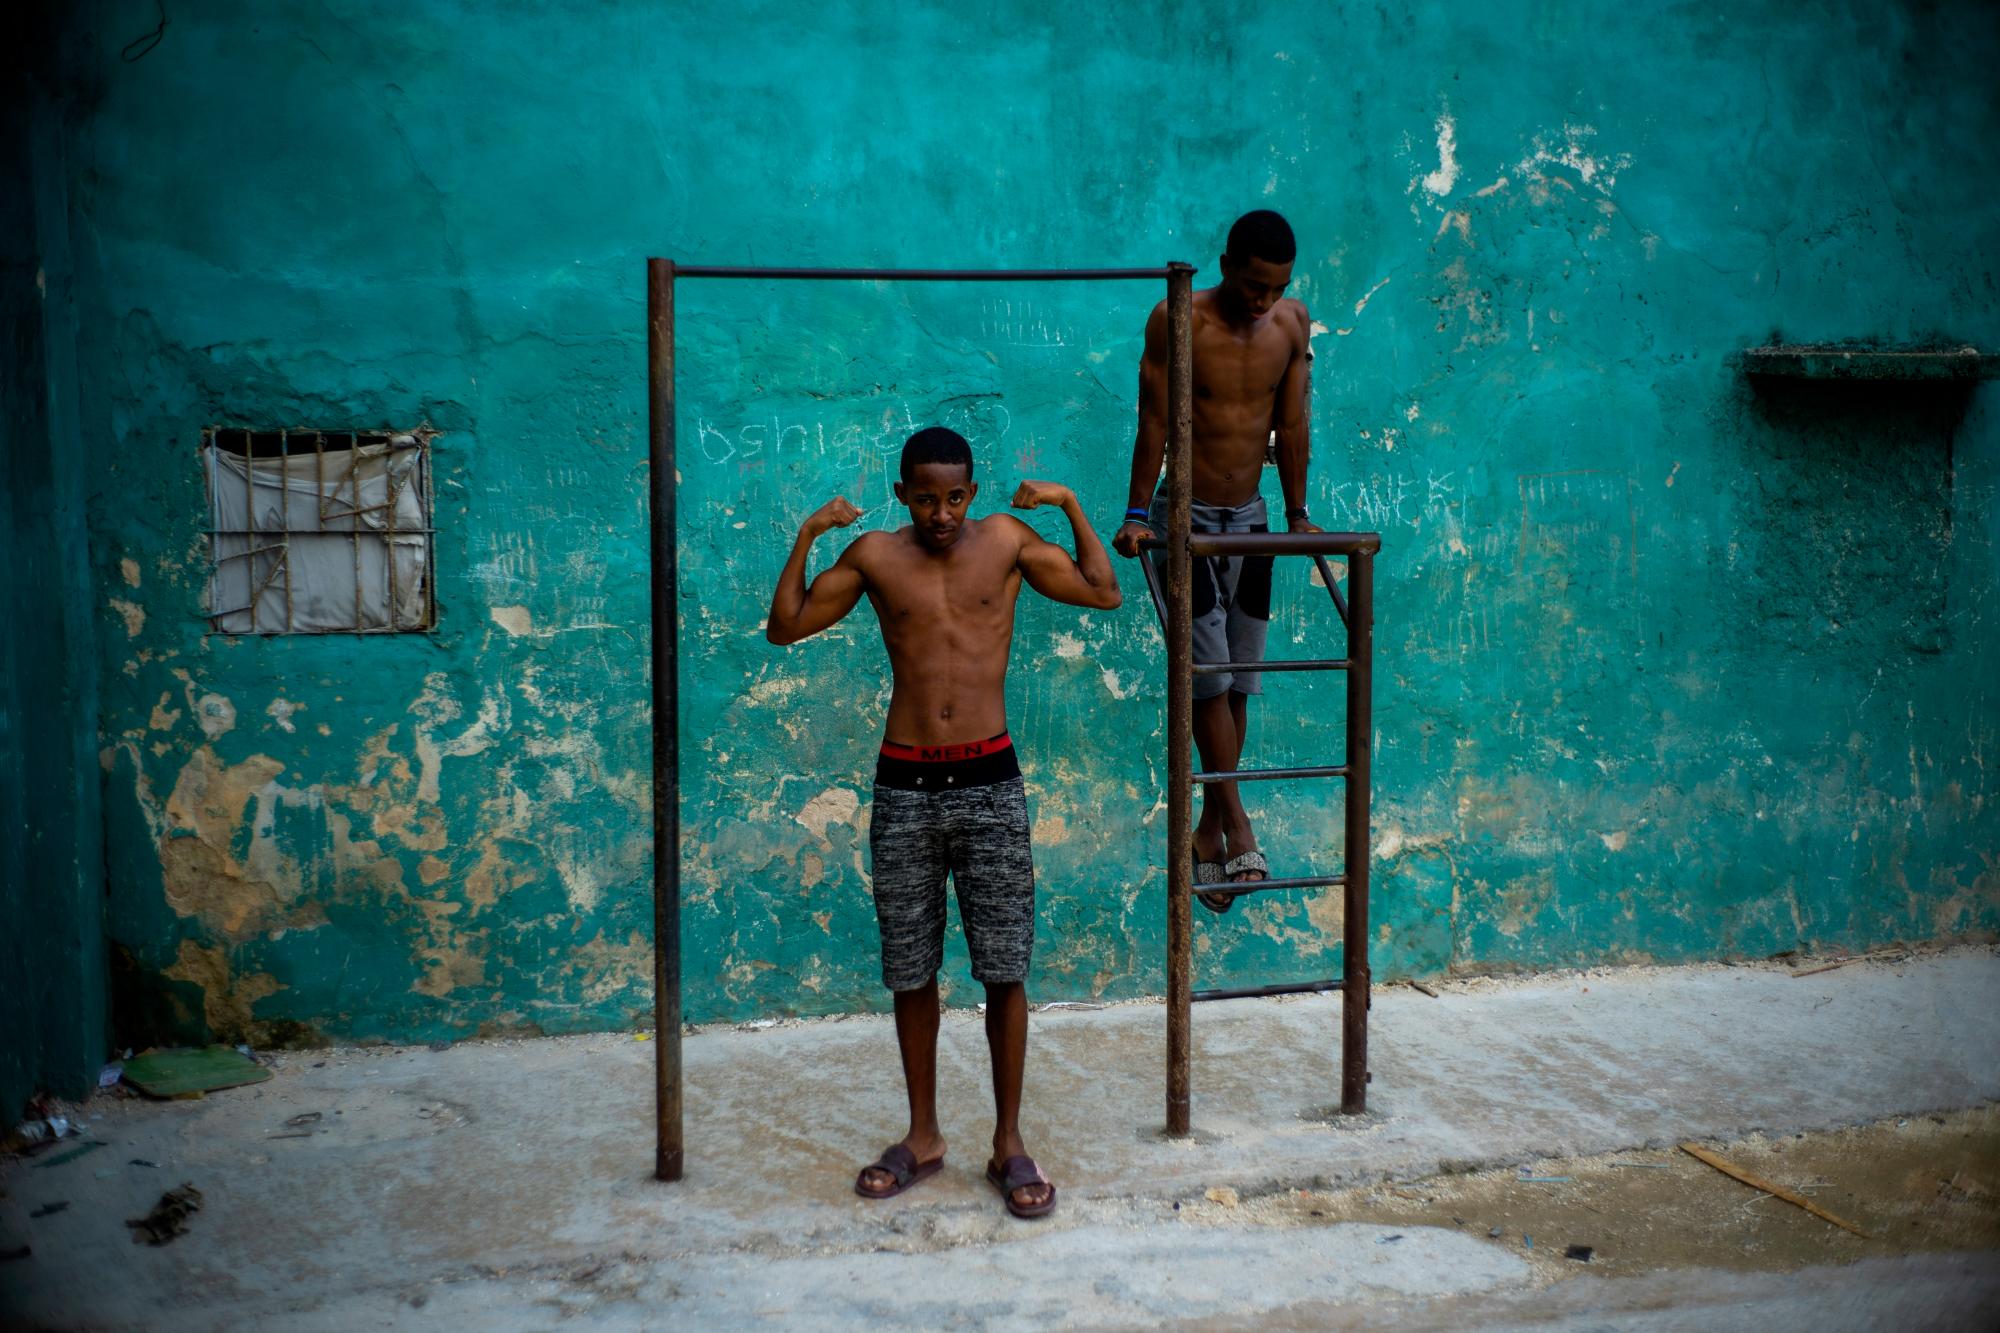 En la imagen, tomada el 5 de febrero de 2020, un joven posa mostrando sus músculos bajo una barra de ejercicios, en La Habana, Cuba.